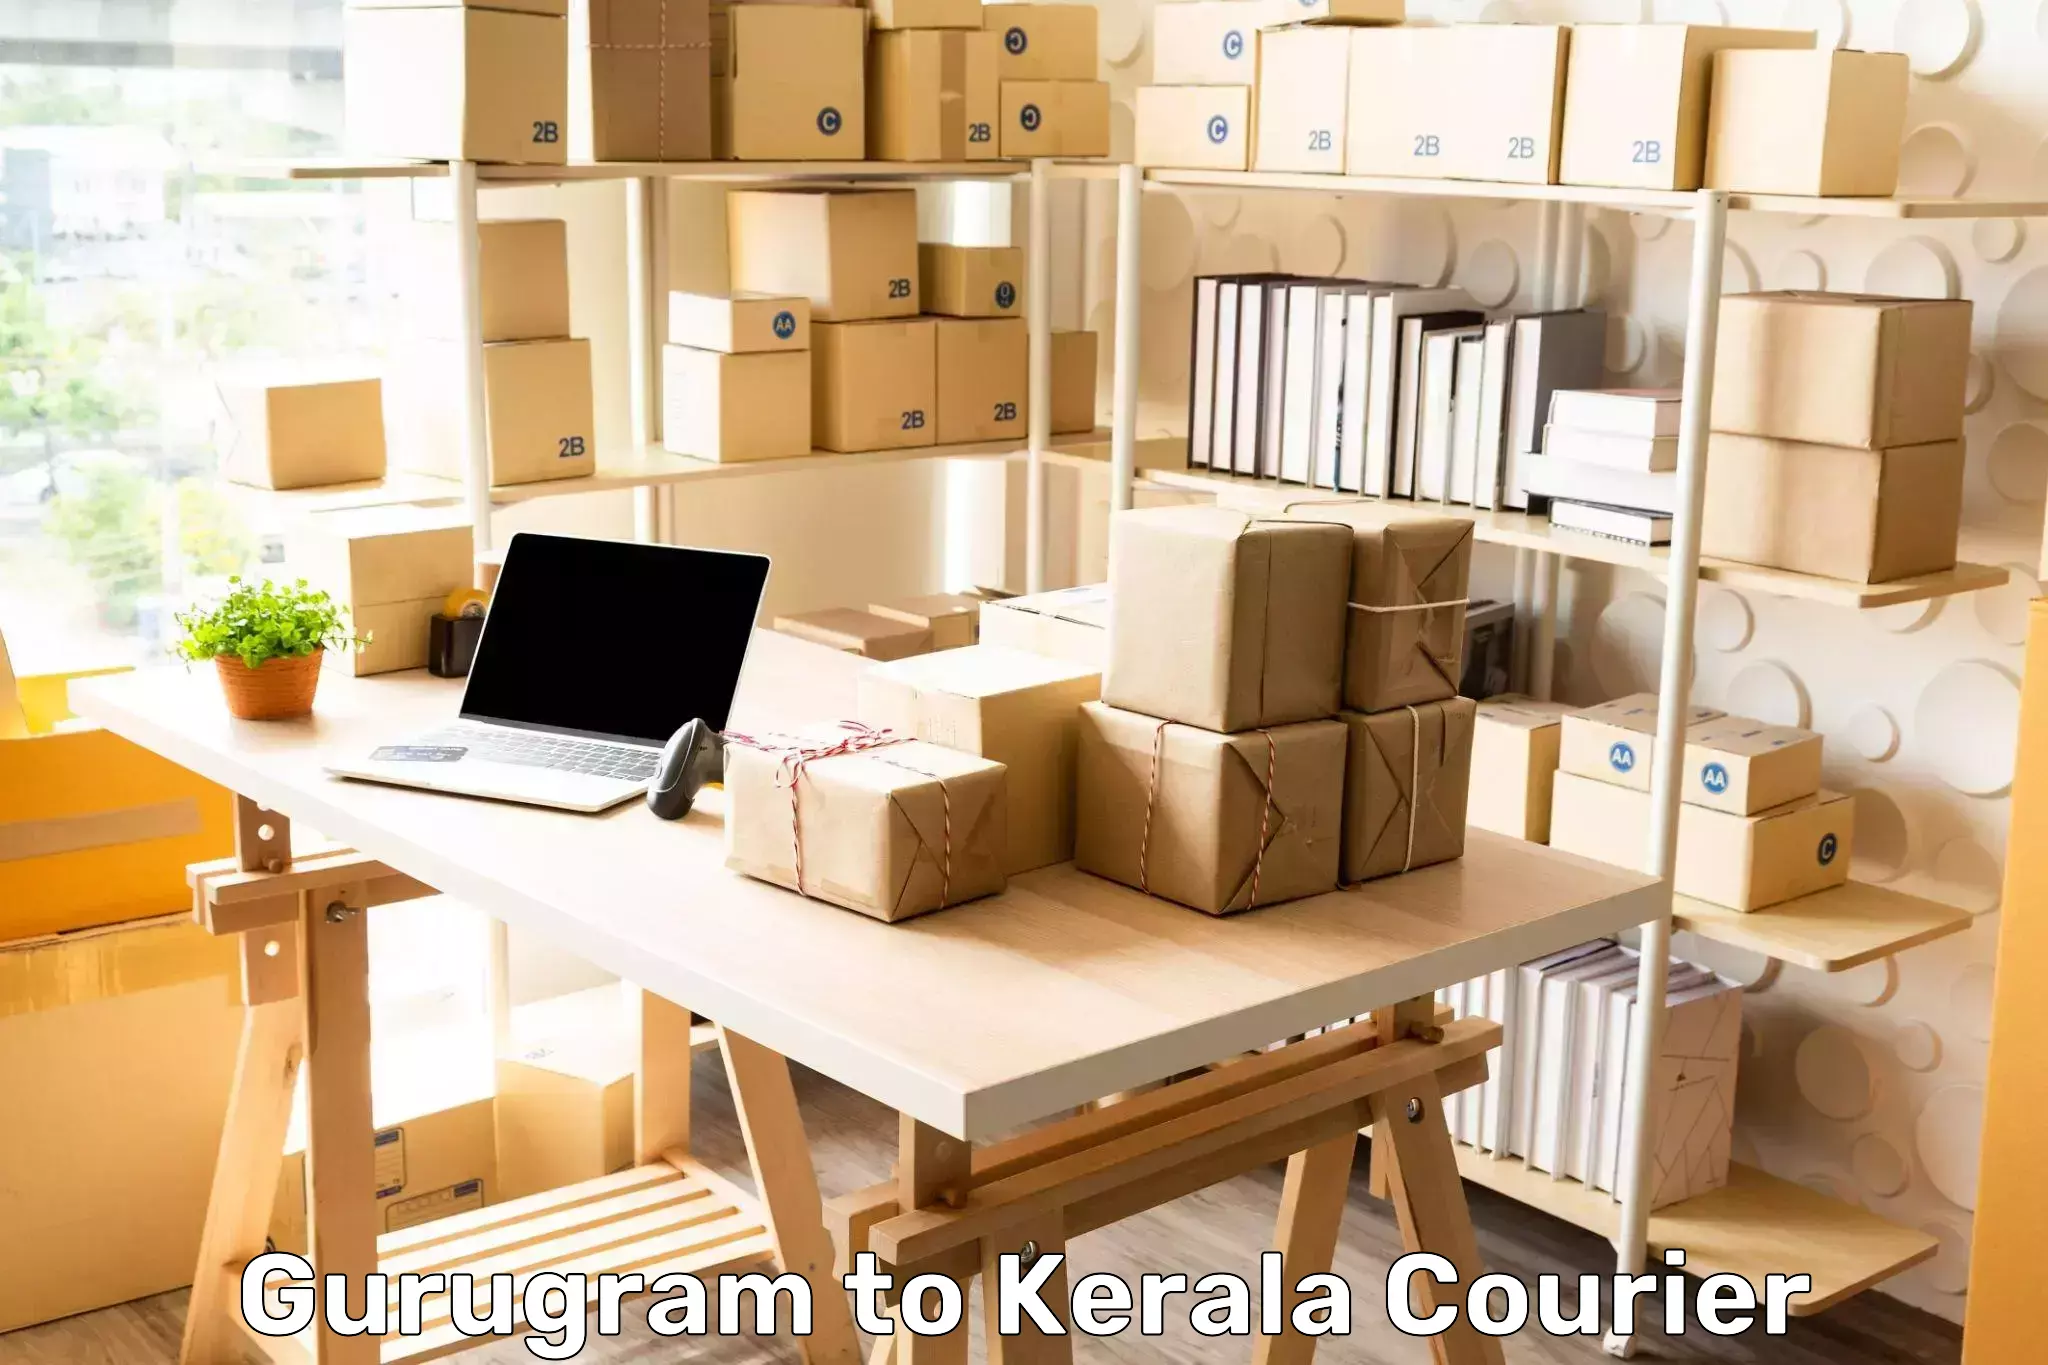 Courier membership in Gurugram to Kerala